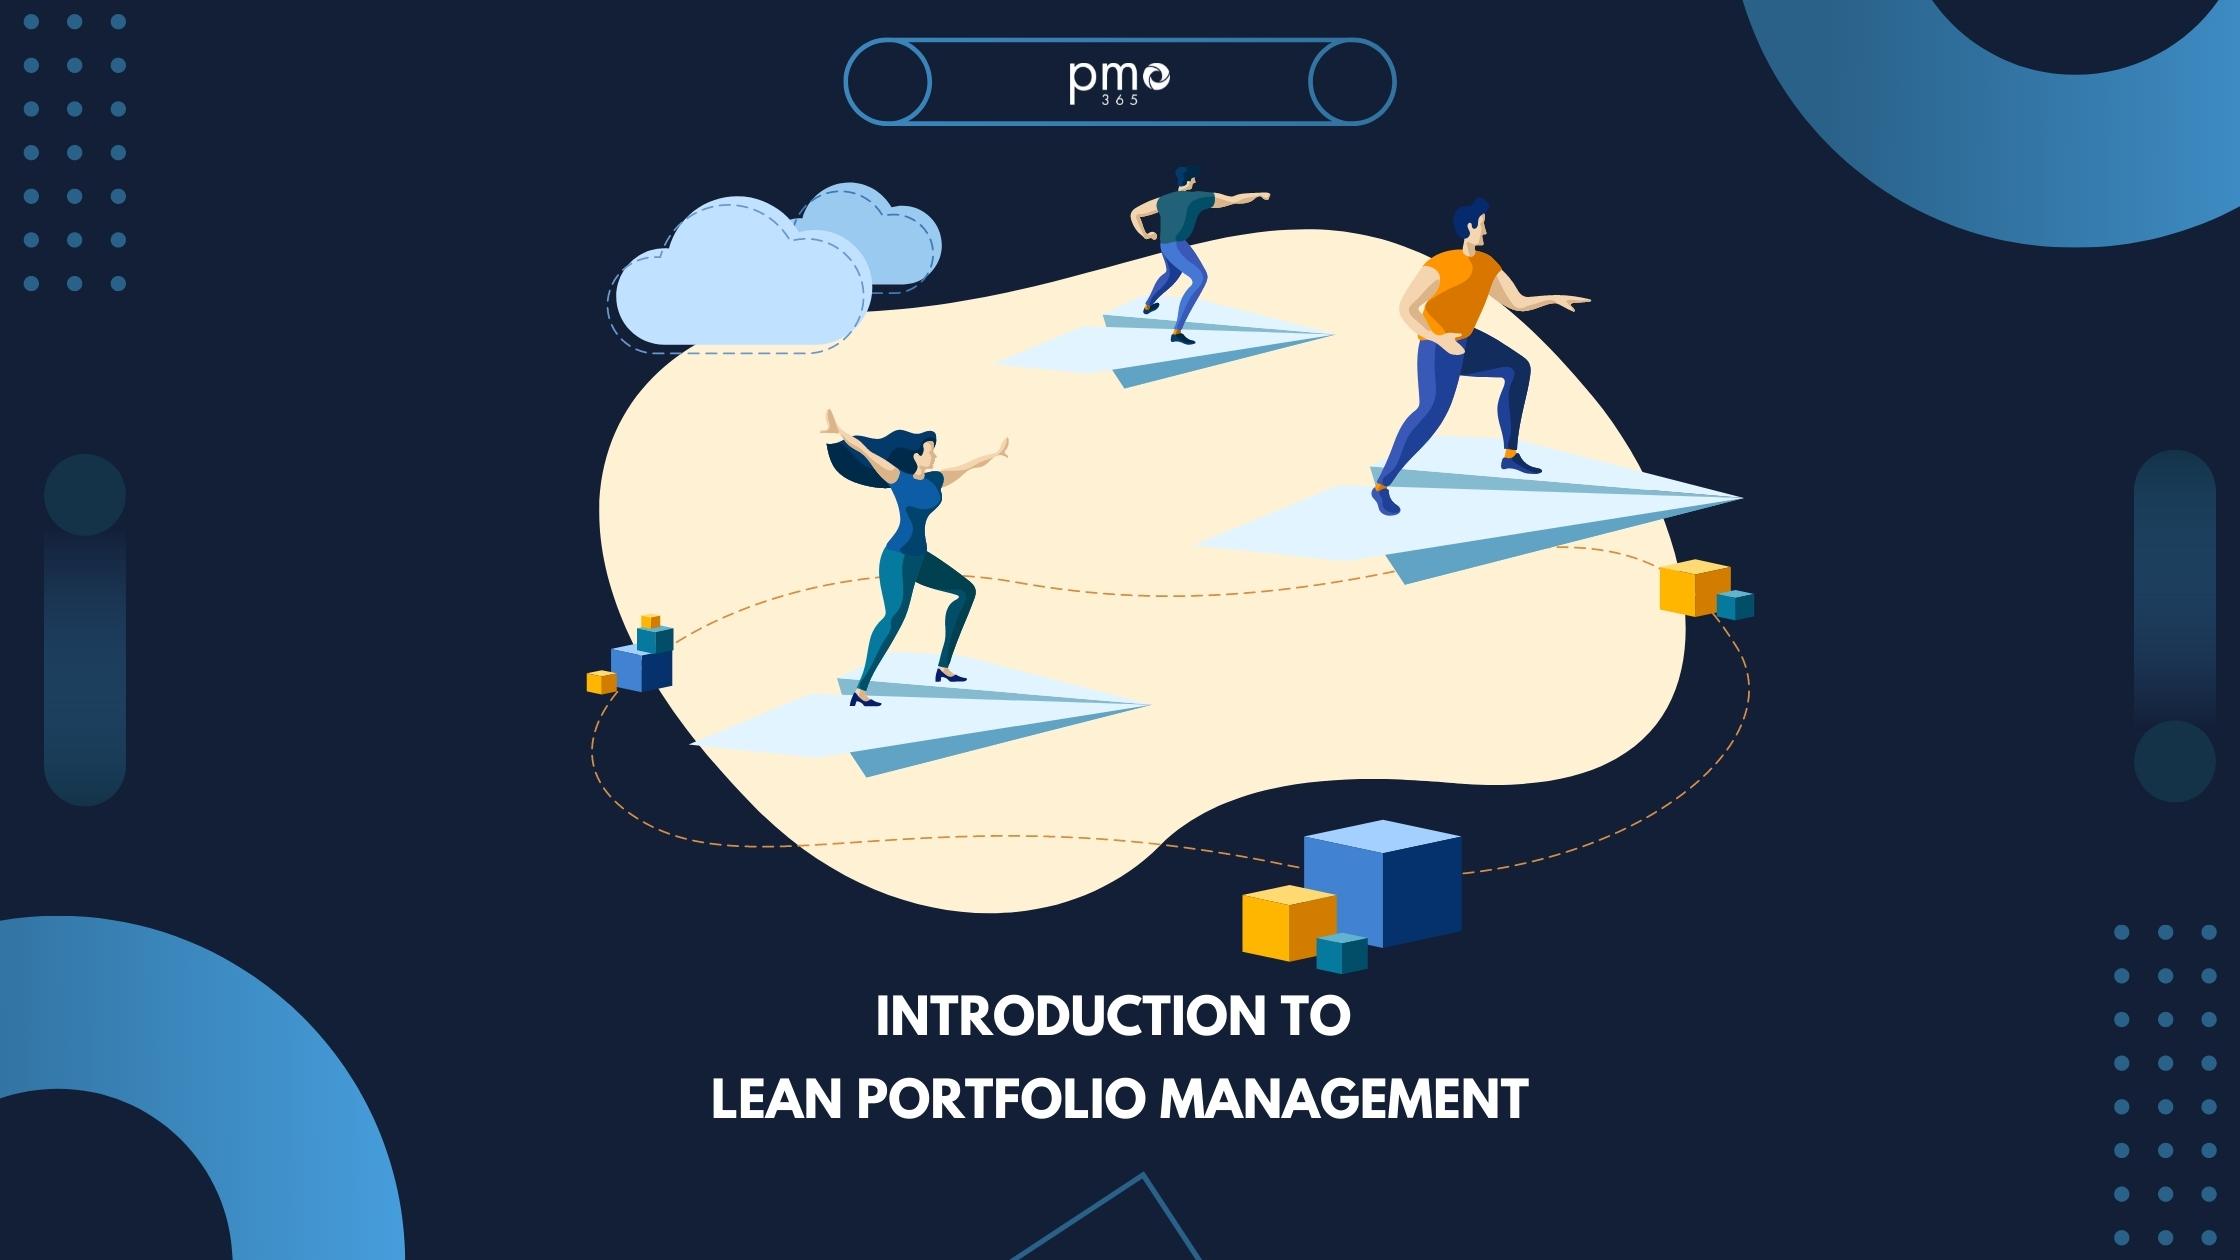 An Introduction to Lean Portfolio Management